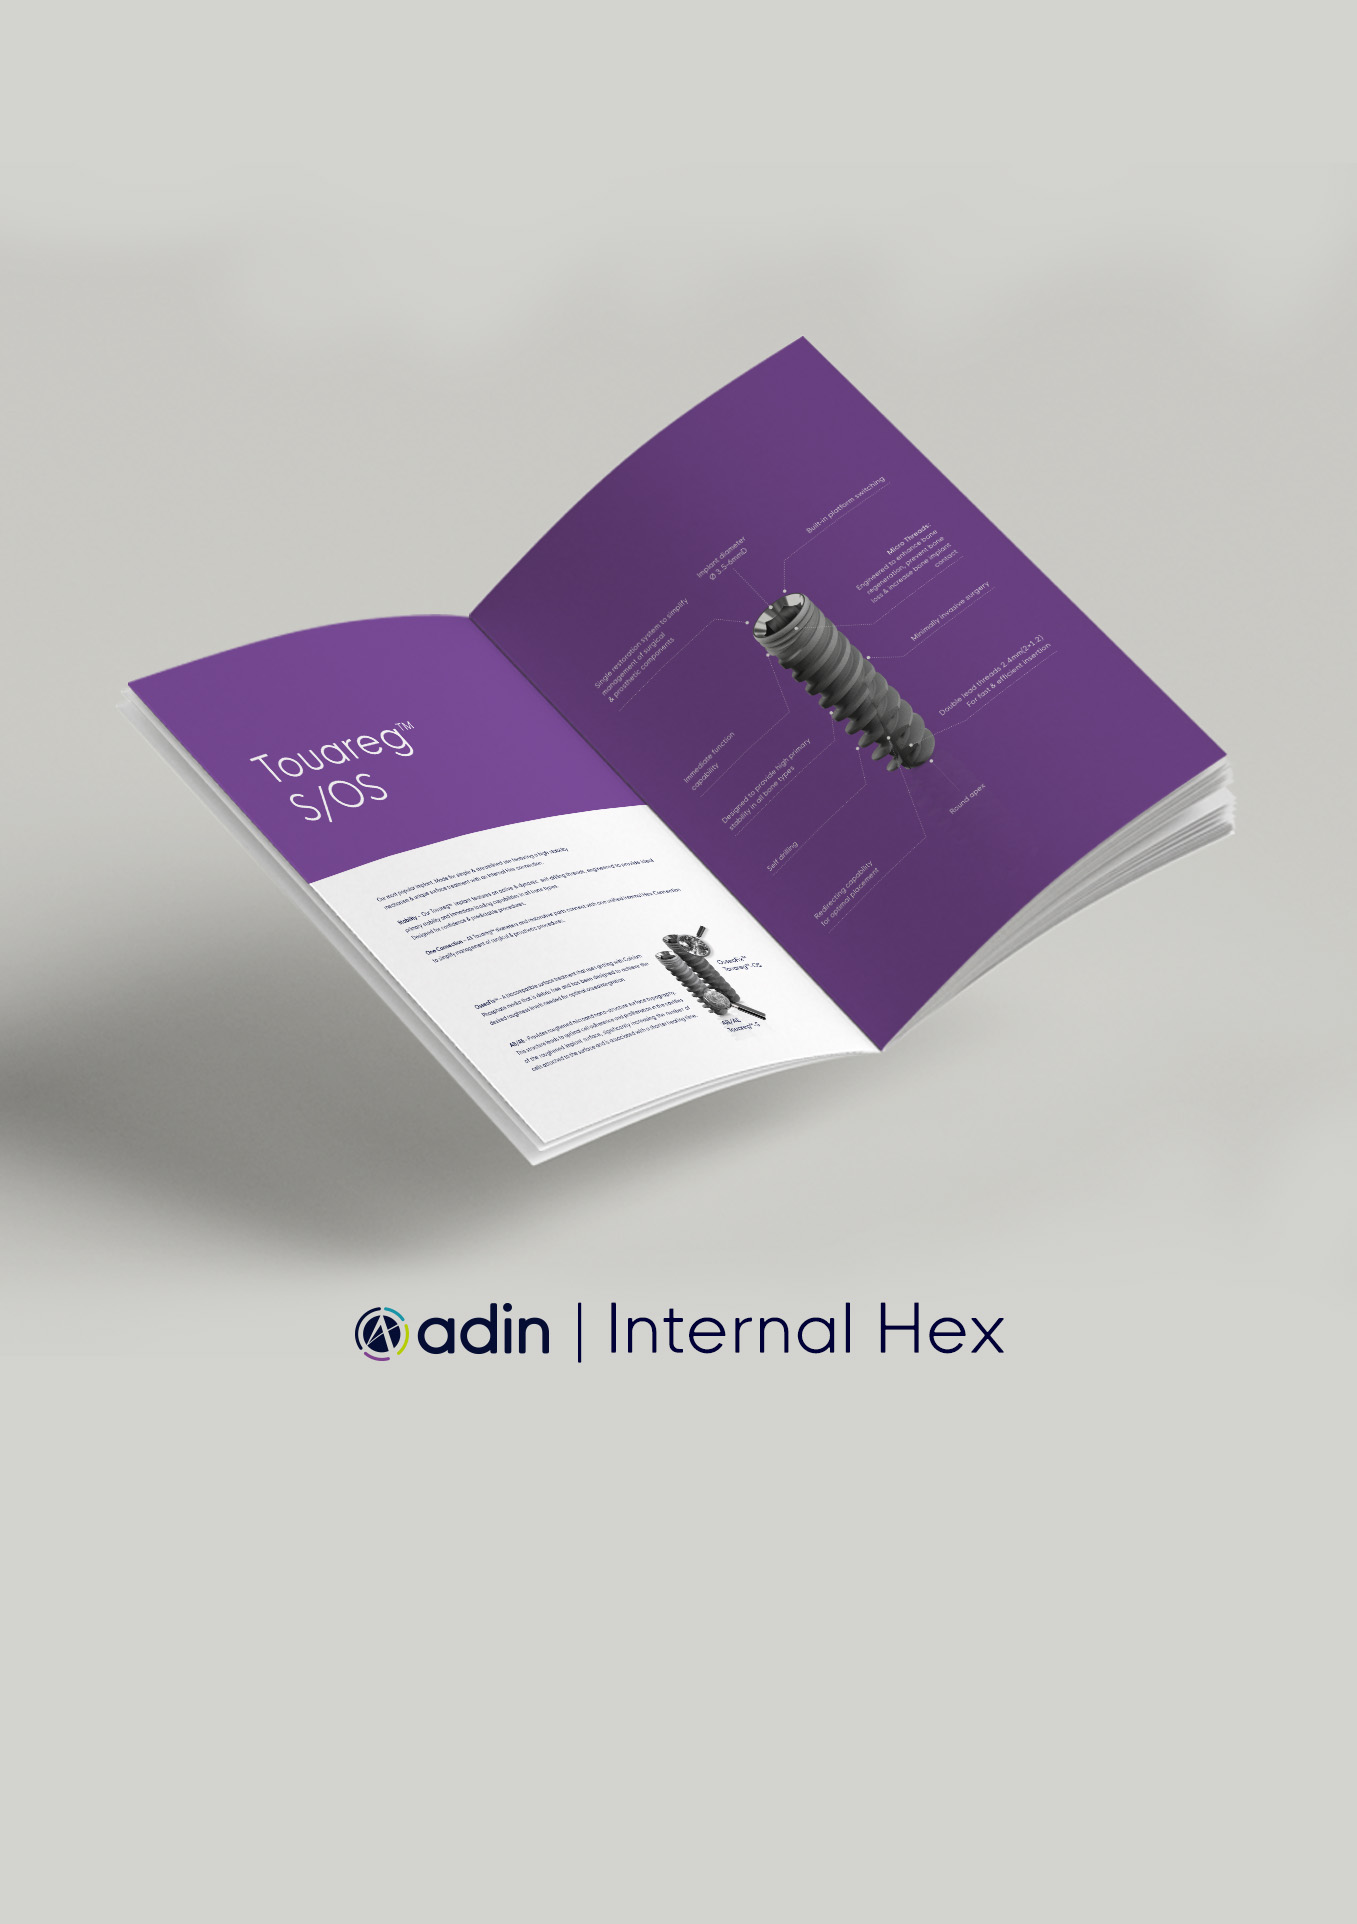 Internal Hex